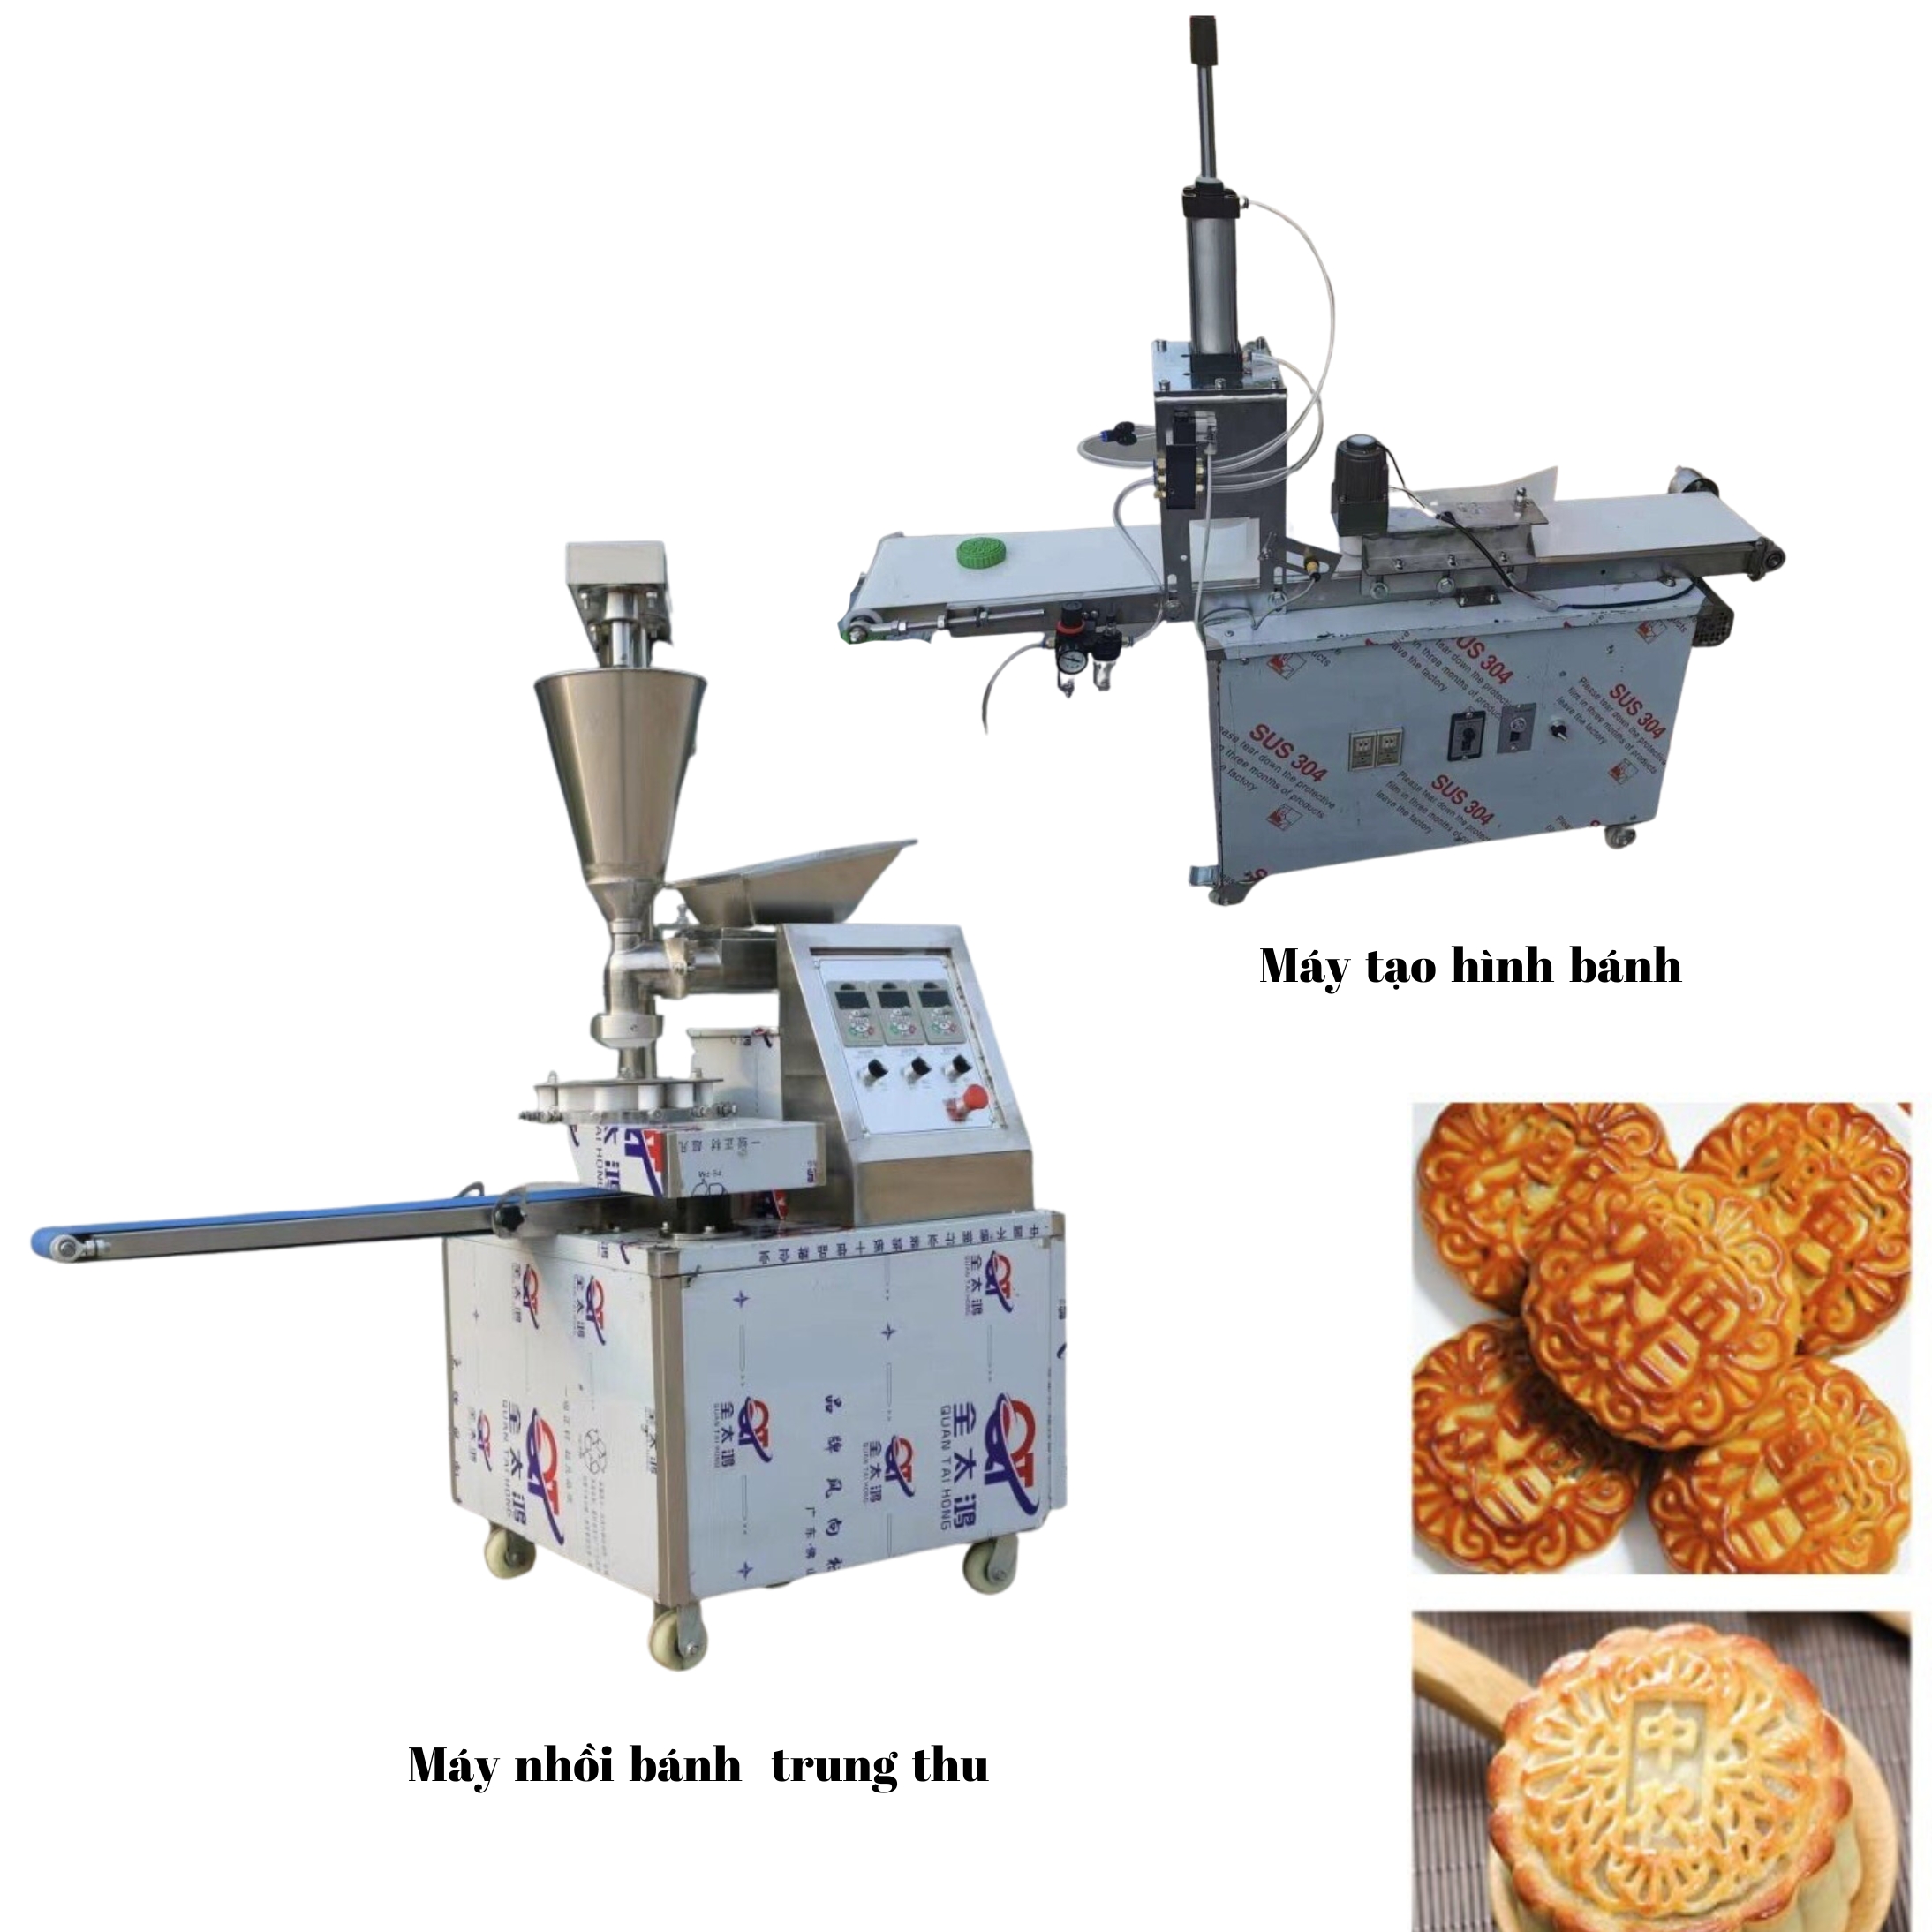 Máy Làm Bánh Trung Thu và Máy Dập Khuôn Bánh: Công Nghệ Hiện Đại Cho Sản Xuất Bánh Trung Thu Chất Lượng Cao